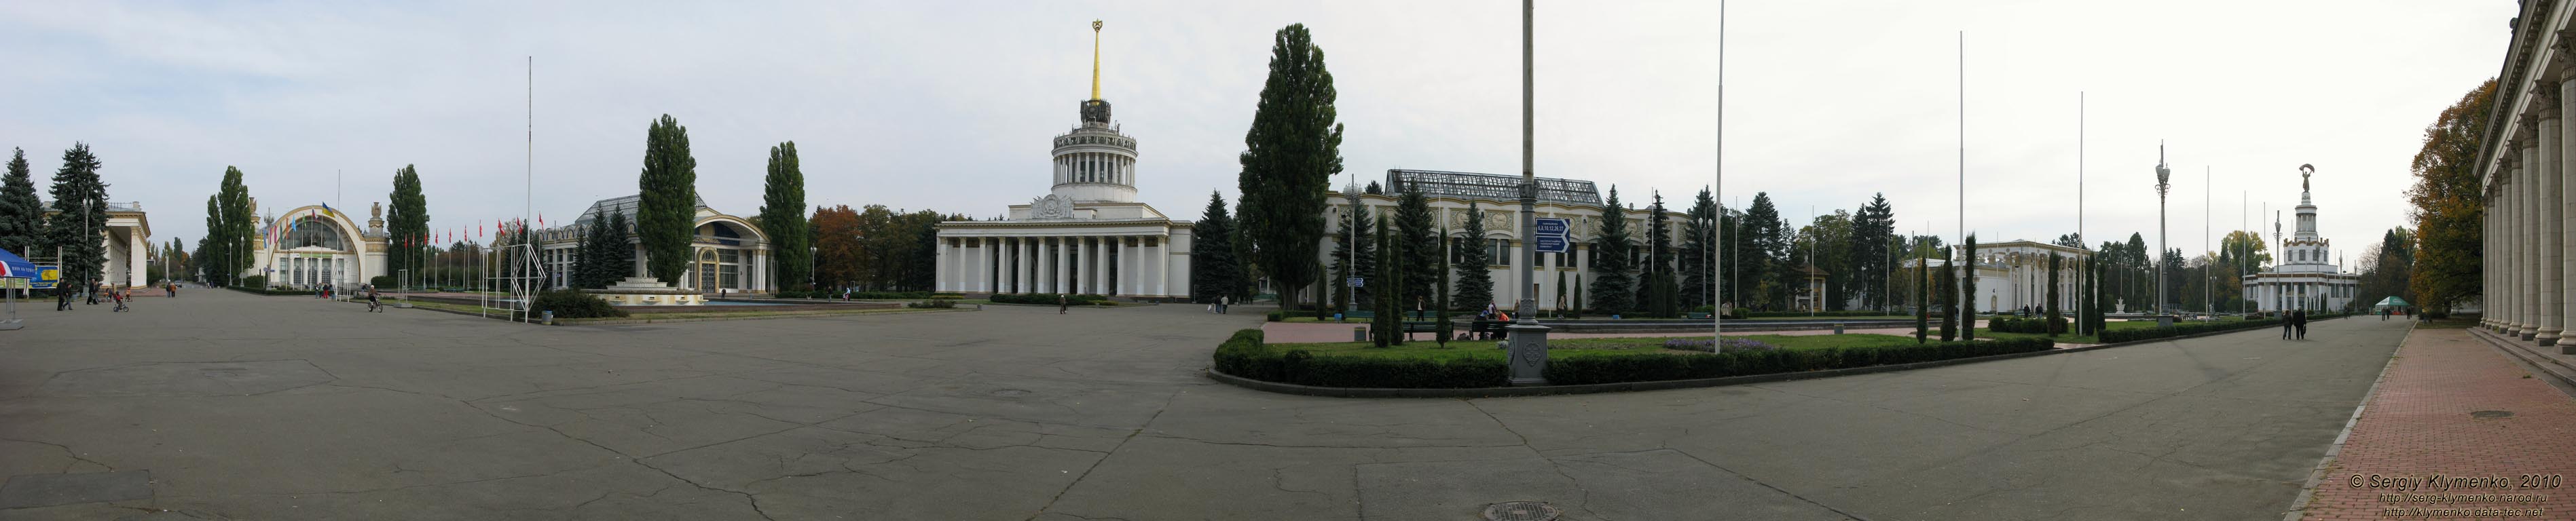 Фото Киева. Национальный комплекс «Экспоцентр Украины». Главная площадь (панорама ~180°).